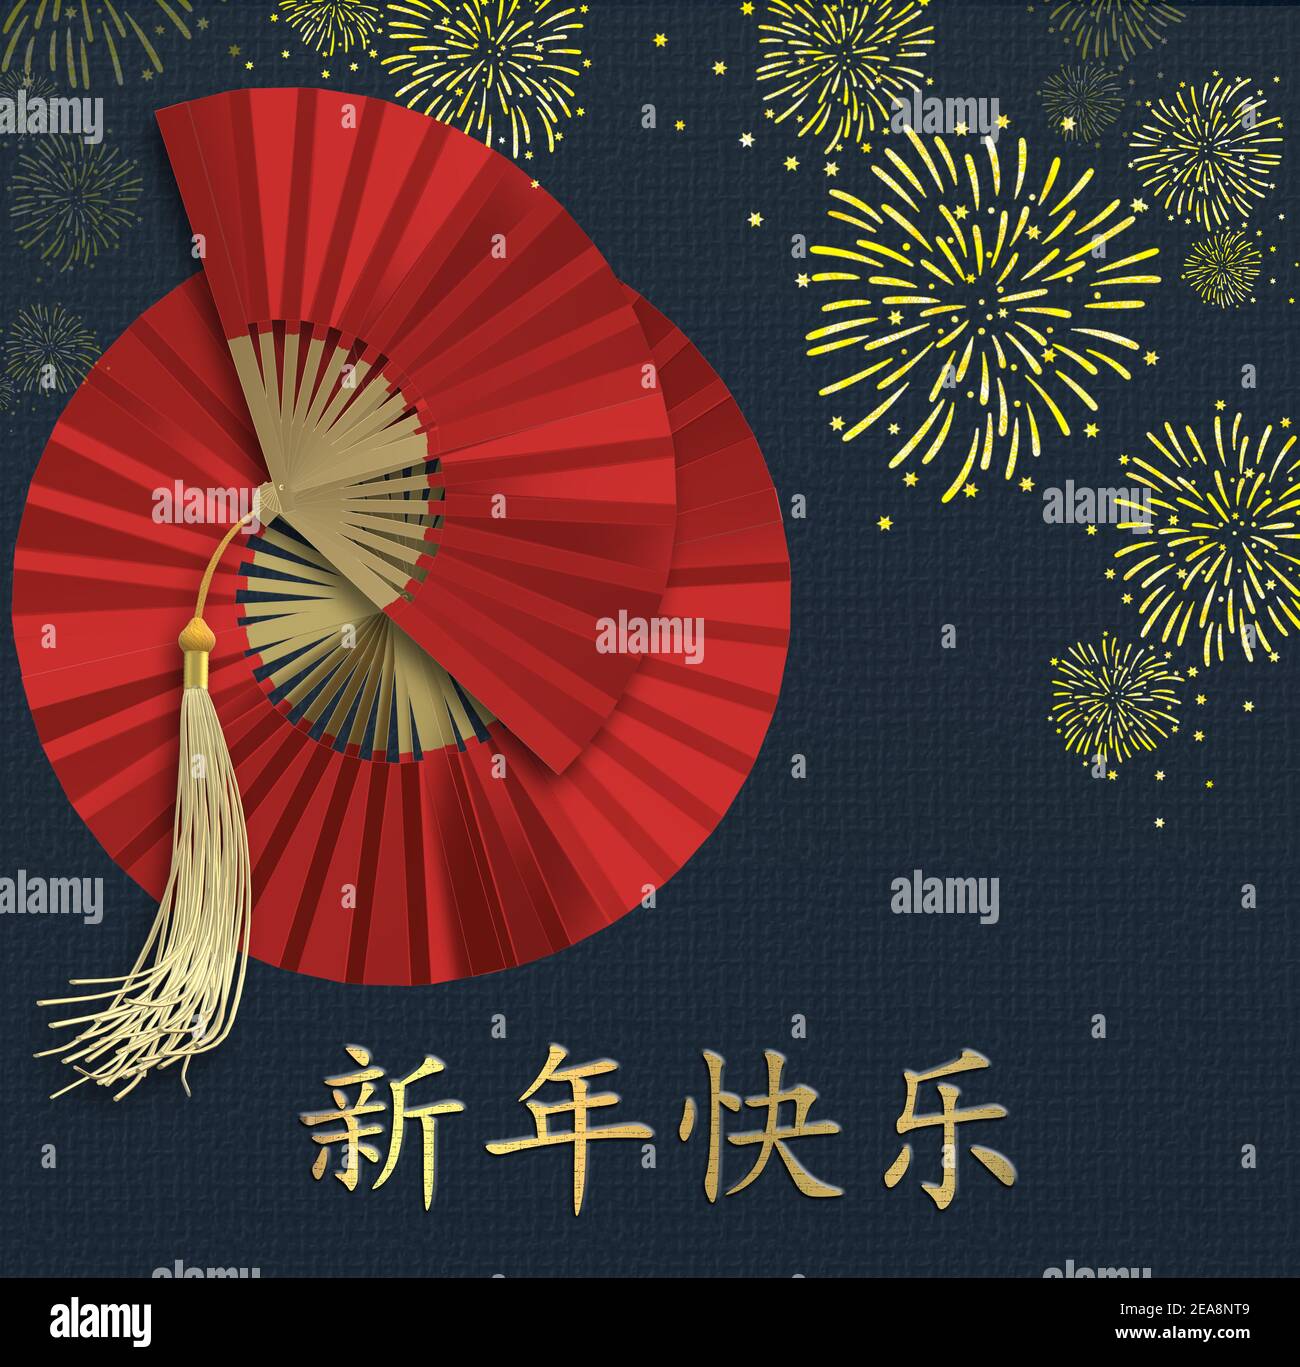 Frohes Chinesisches Neues Jahr. Rote Papierventilatoren, Feuerarbeiten auf blauem Hintergrund. Traditionelle Feiertage Lunar Neujahr. Gold Text Chinesische Übersetzung Happy New Ye Stockfoto